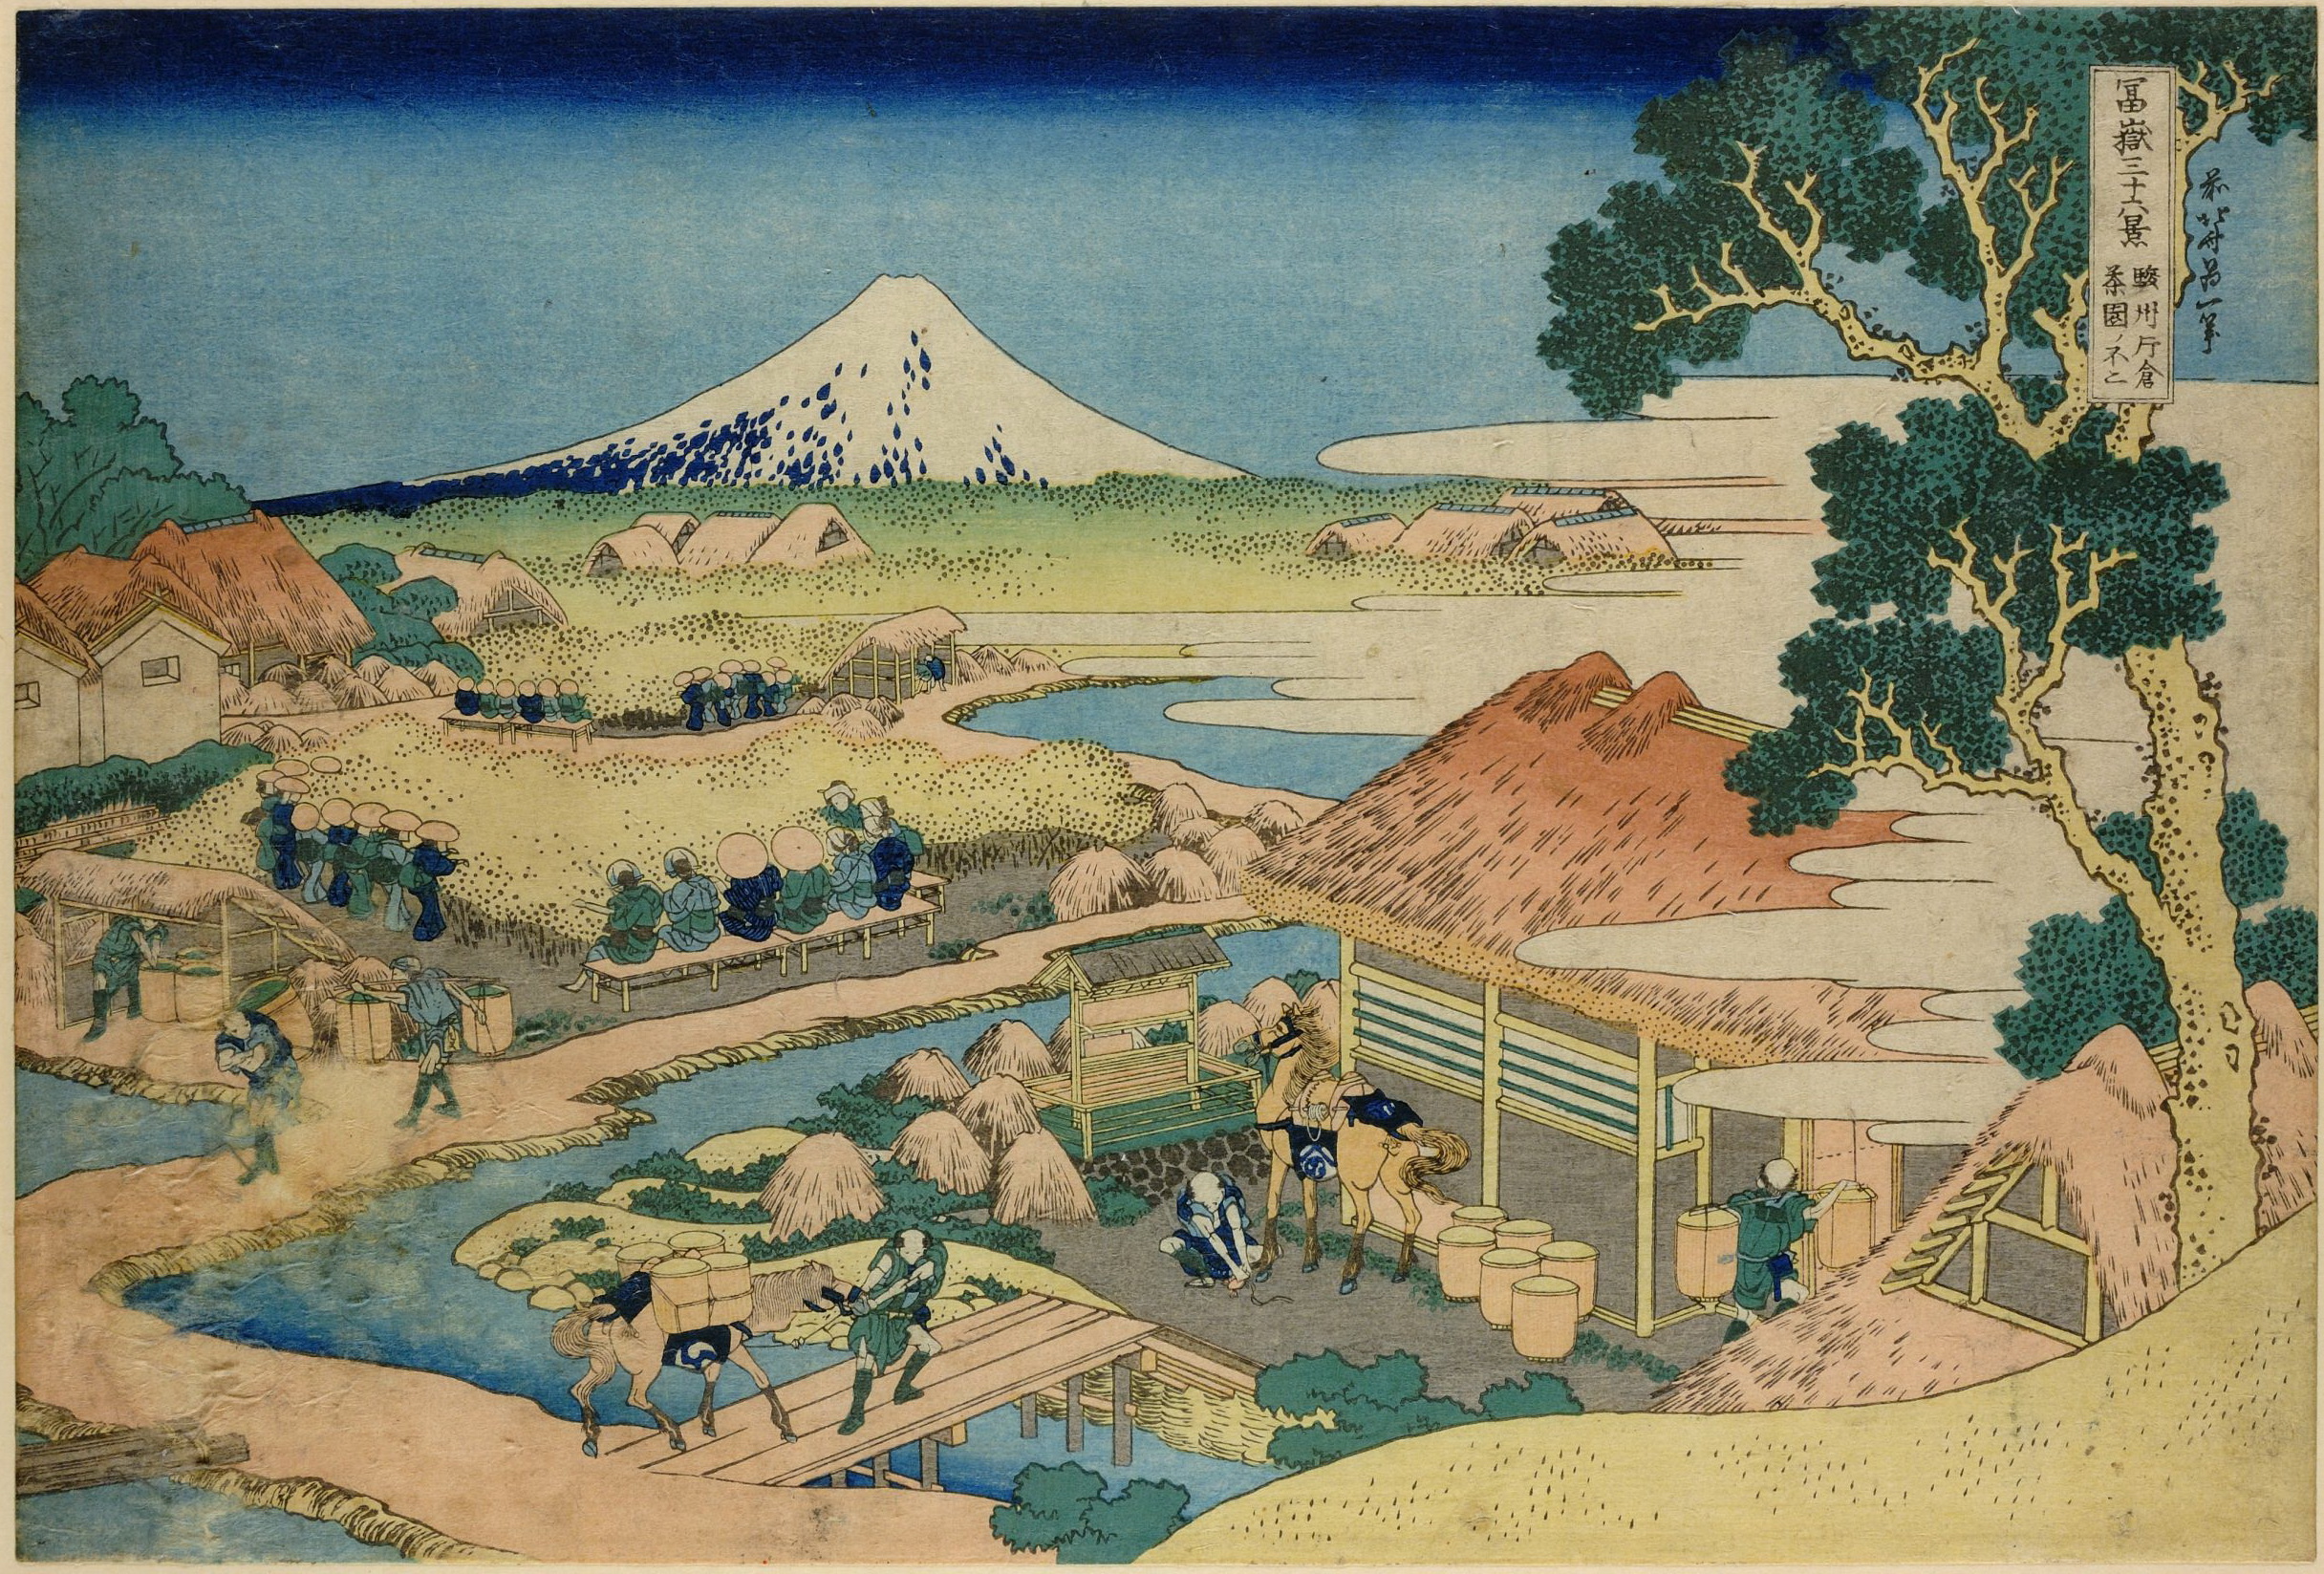 Katsushika Hokusai. Fuji from the Katakura Tea Fields in Suruga, from the series Thirty-six Views of Mount Fuji